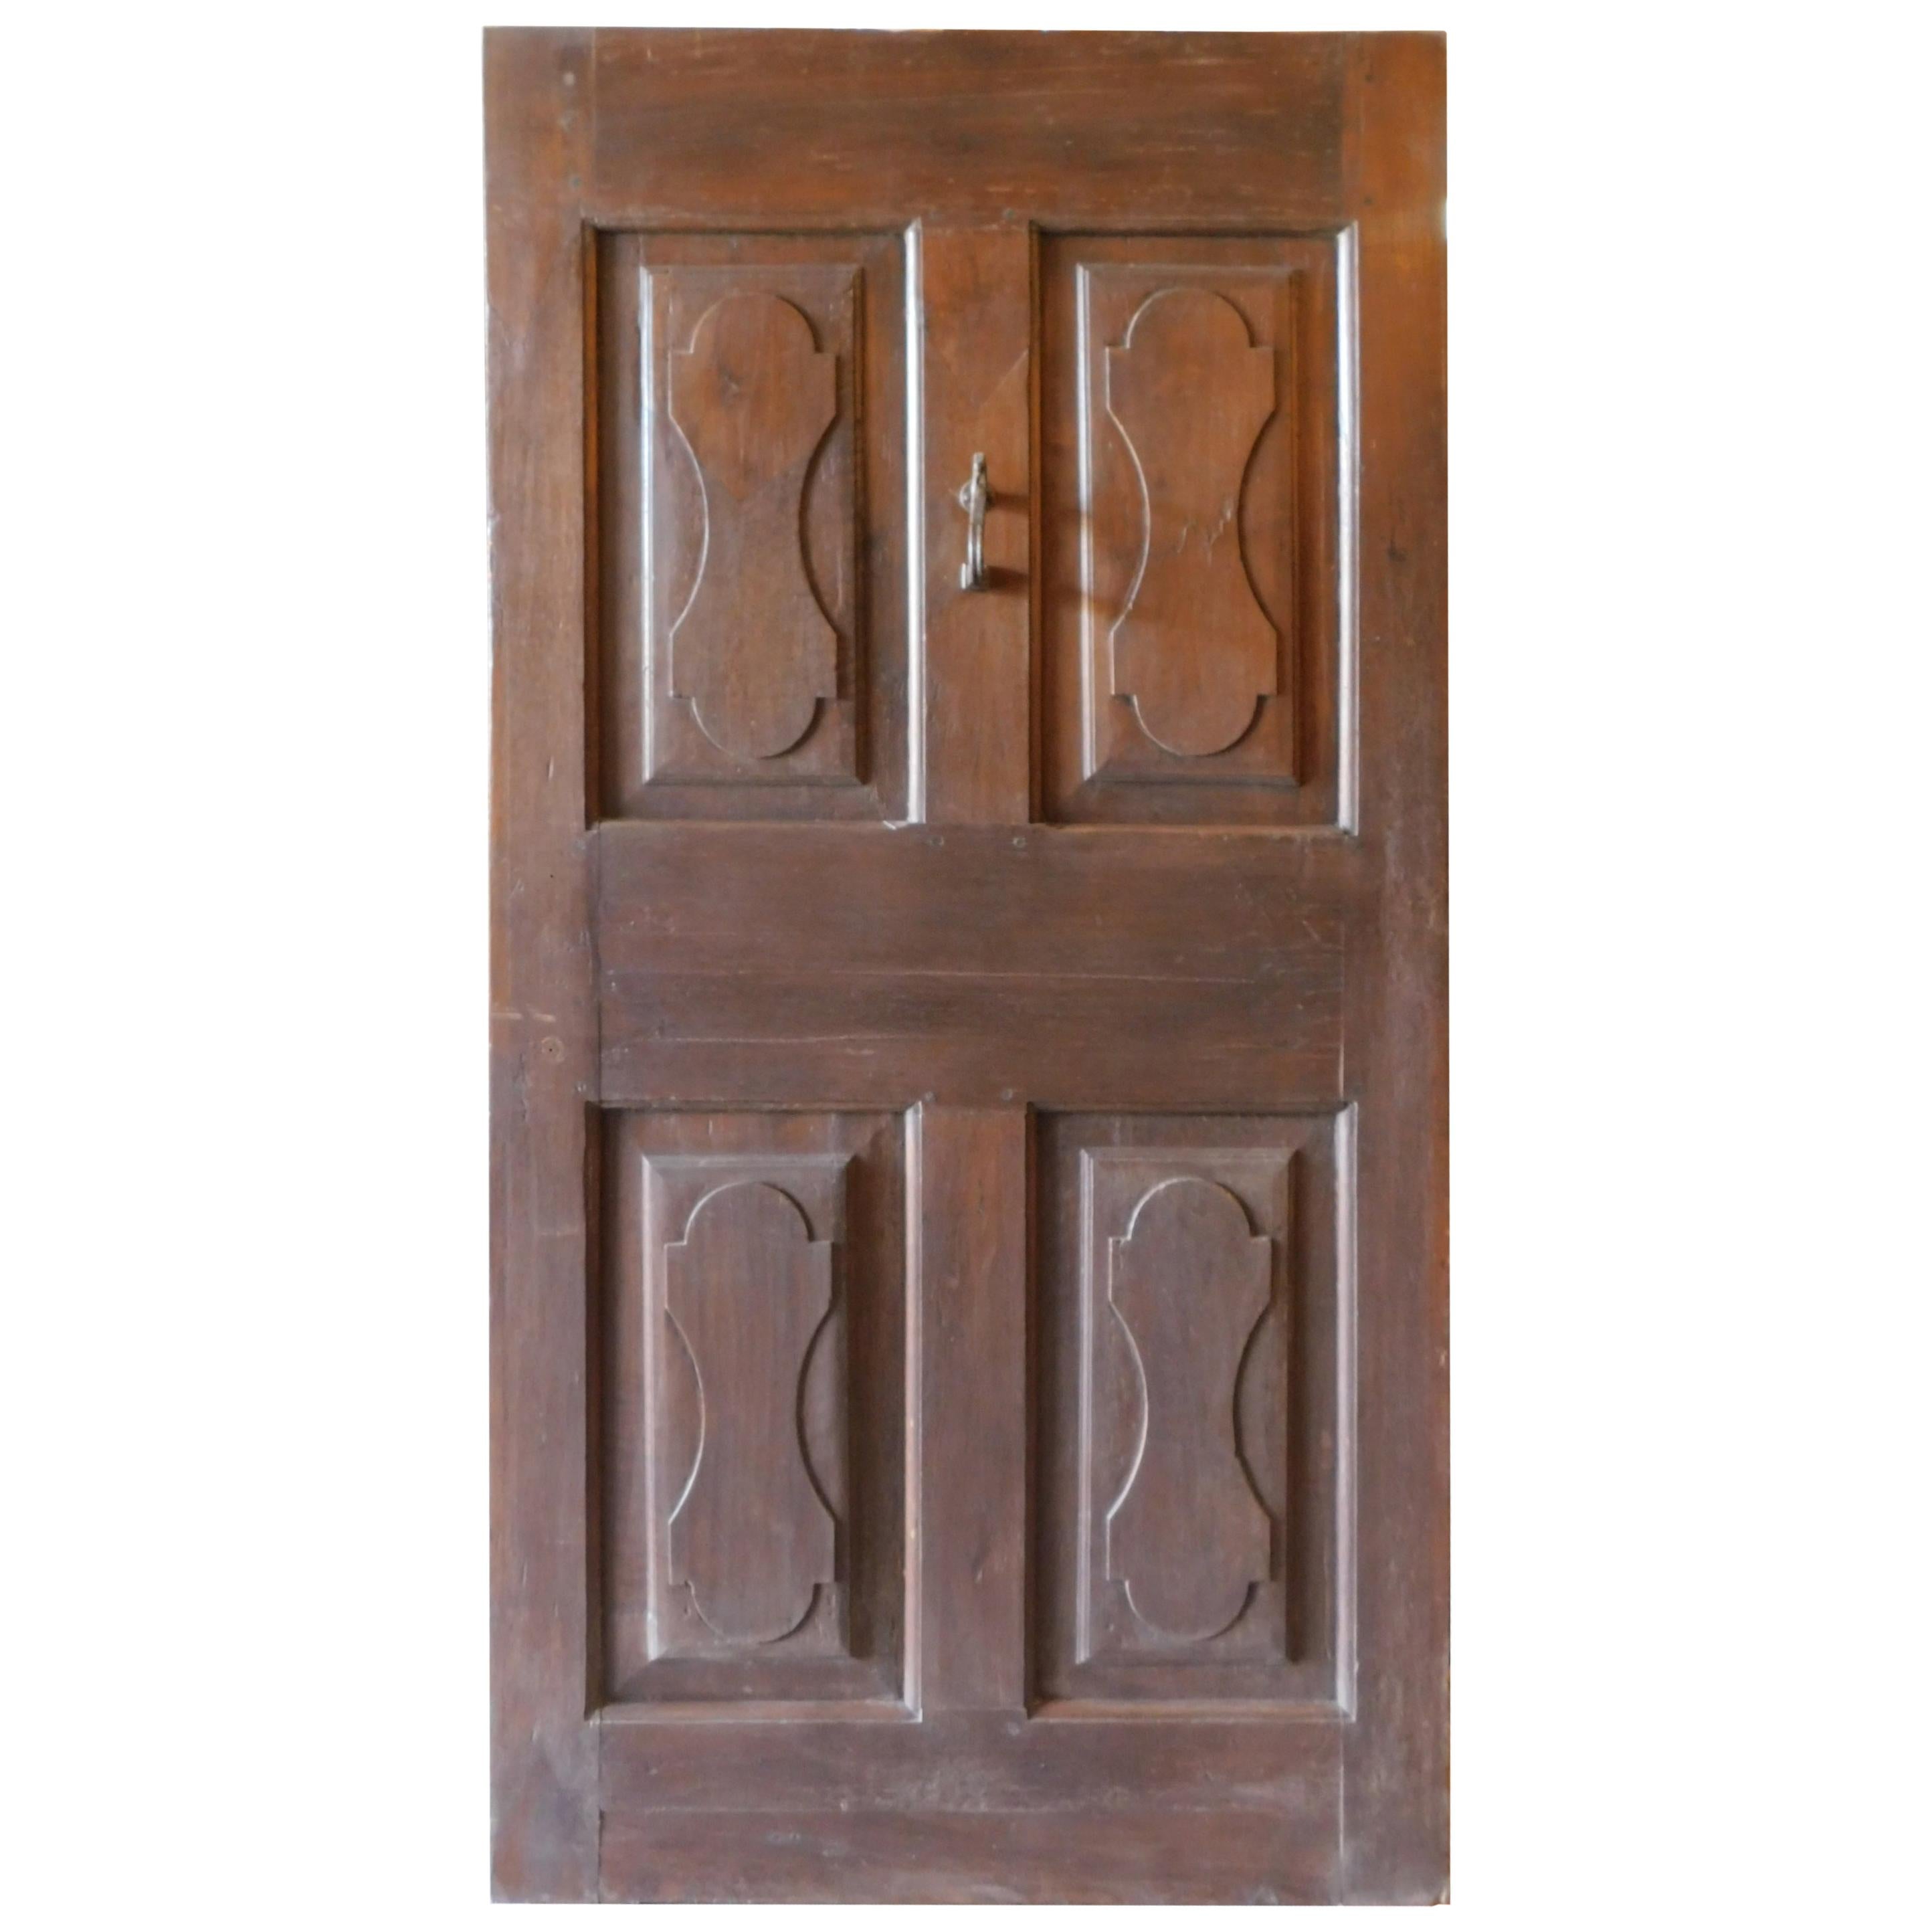 5" Victorian Front Door Knocker SOLID Brass GOLD Urn Style Wooden Doors D7 